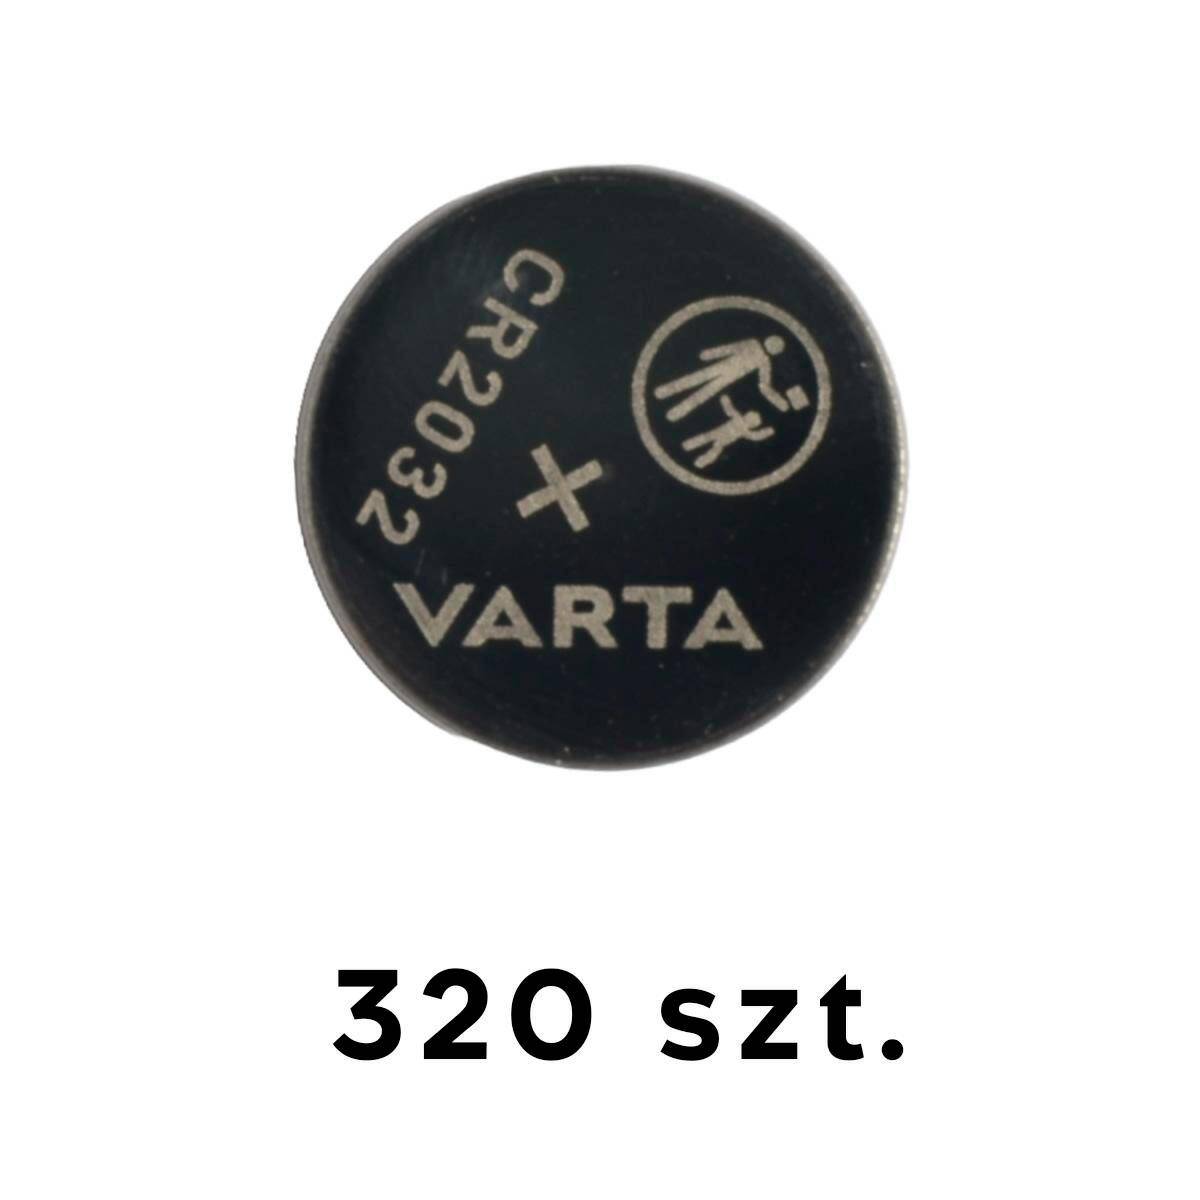 Varta CR2032 3V battery